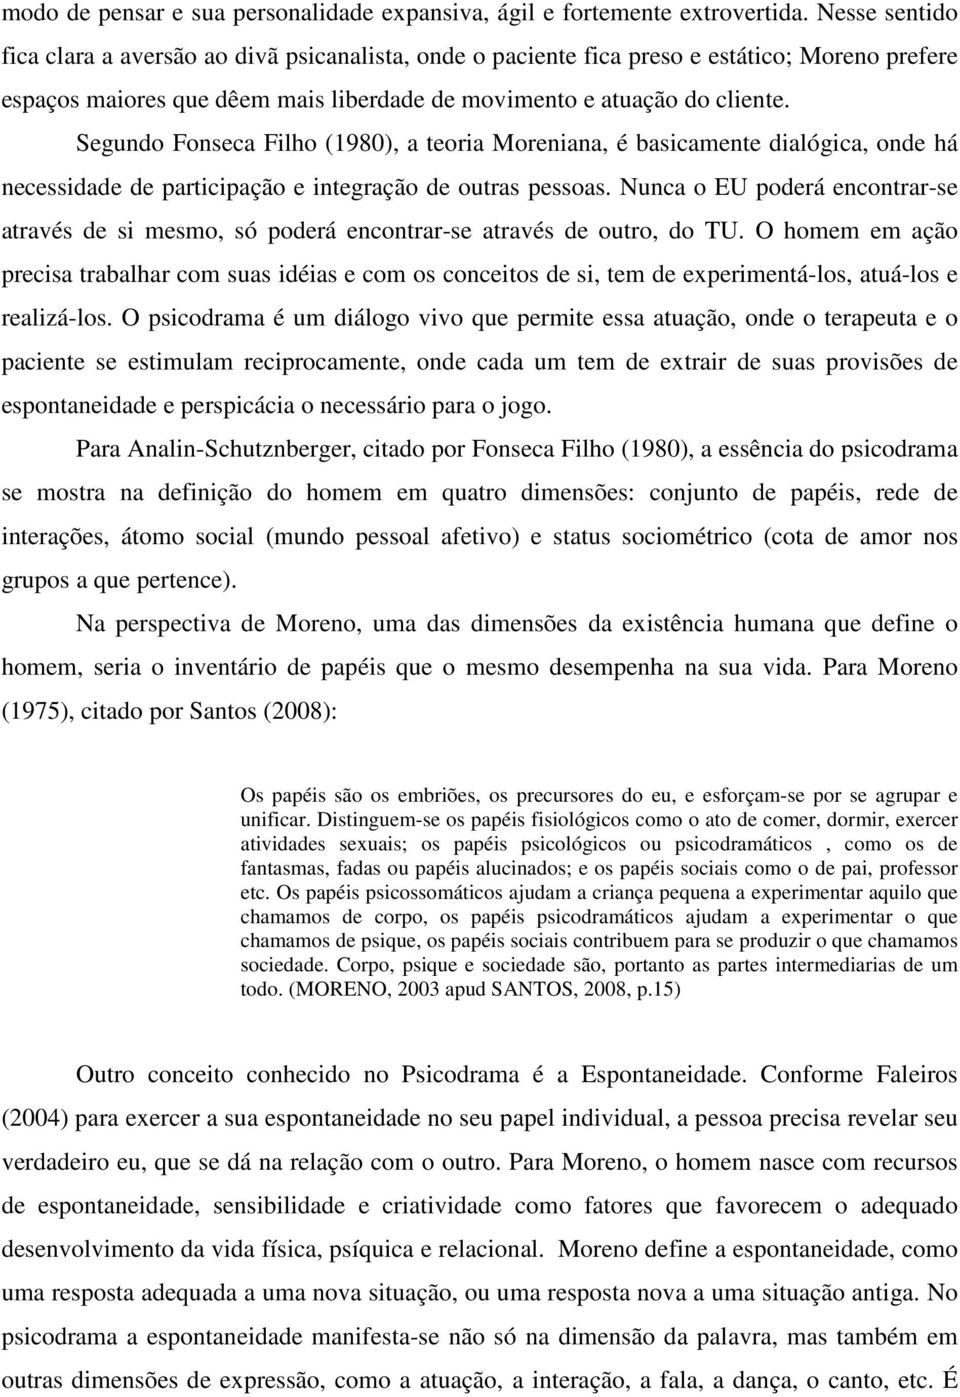 Segundo Fonseca Filho (1980), a teoria Moreniana, é basicamente dialógica, onde há necessidade de participação e integração de outras pessoas.